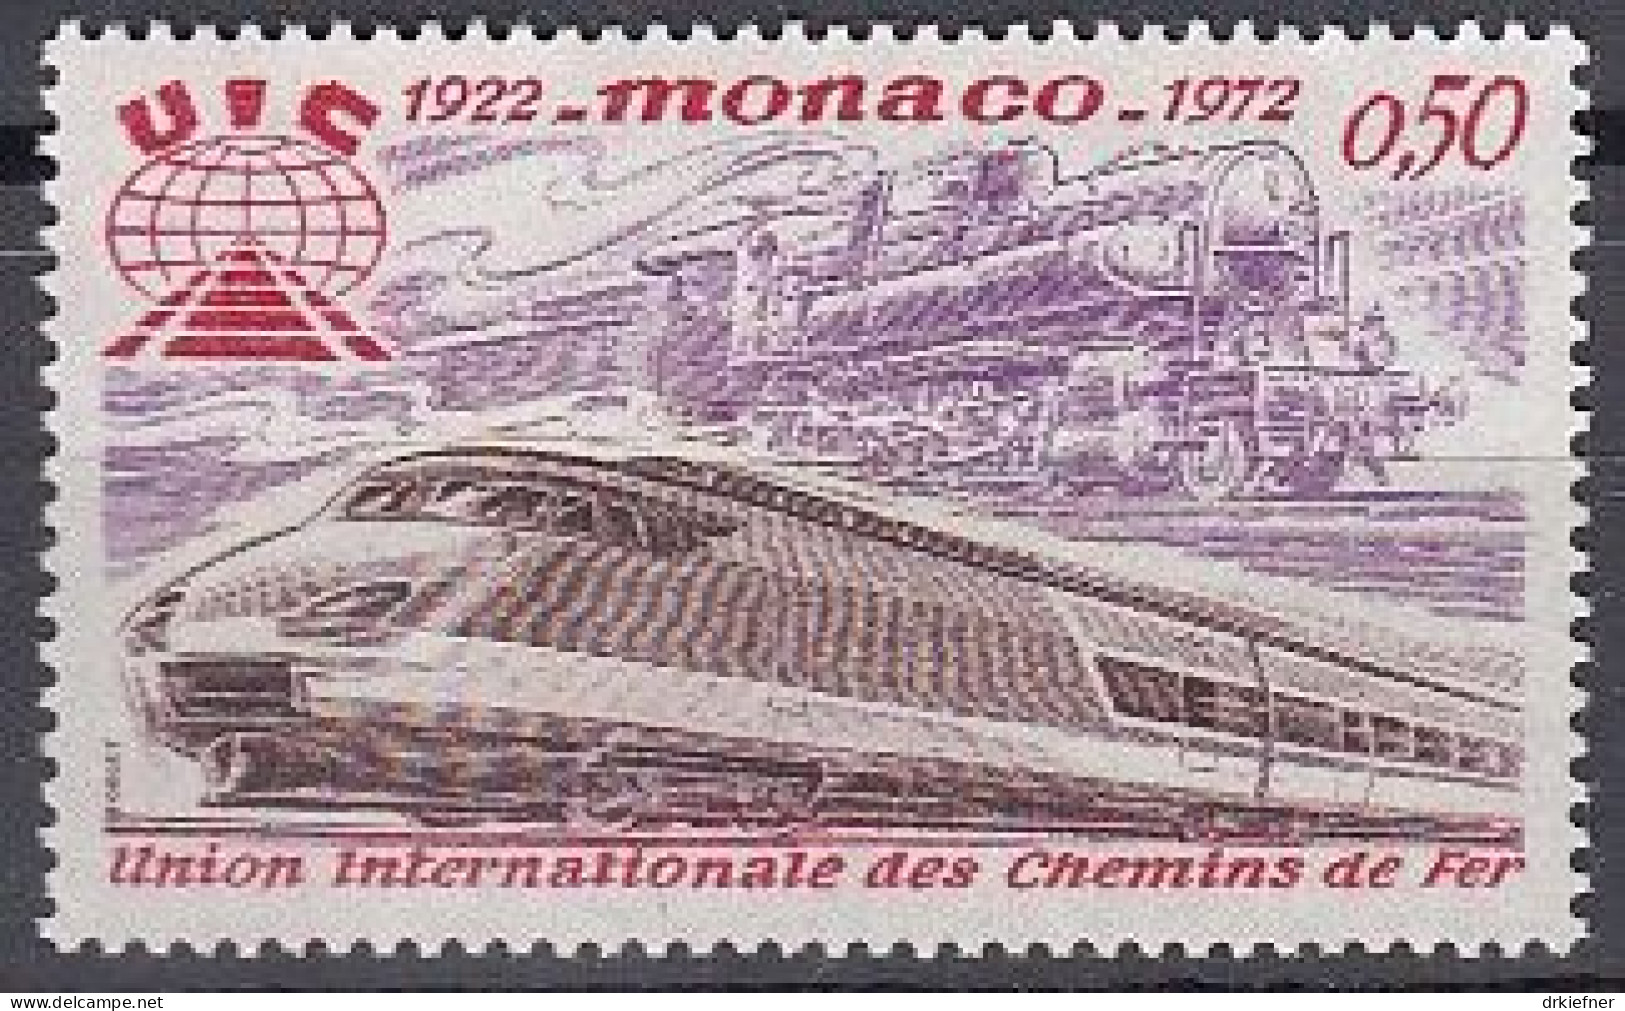 MONACO  1034, Postfrisch **, Eisenbahn-Verband, Dampflok, TGV, 1972 - Unused Stamps